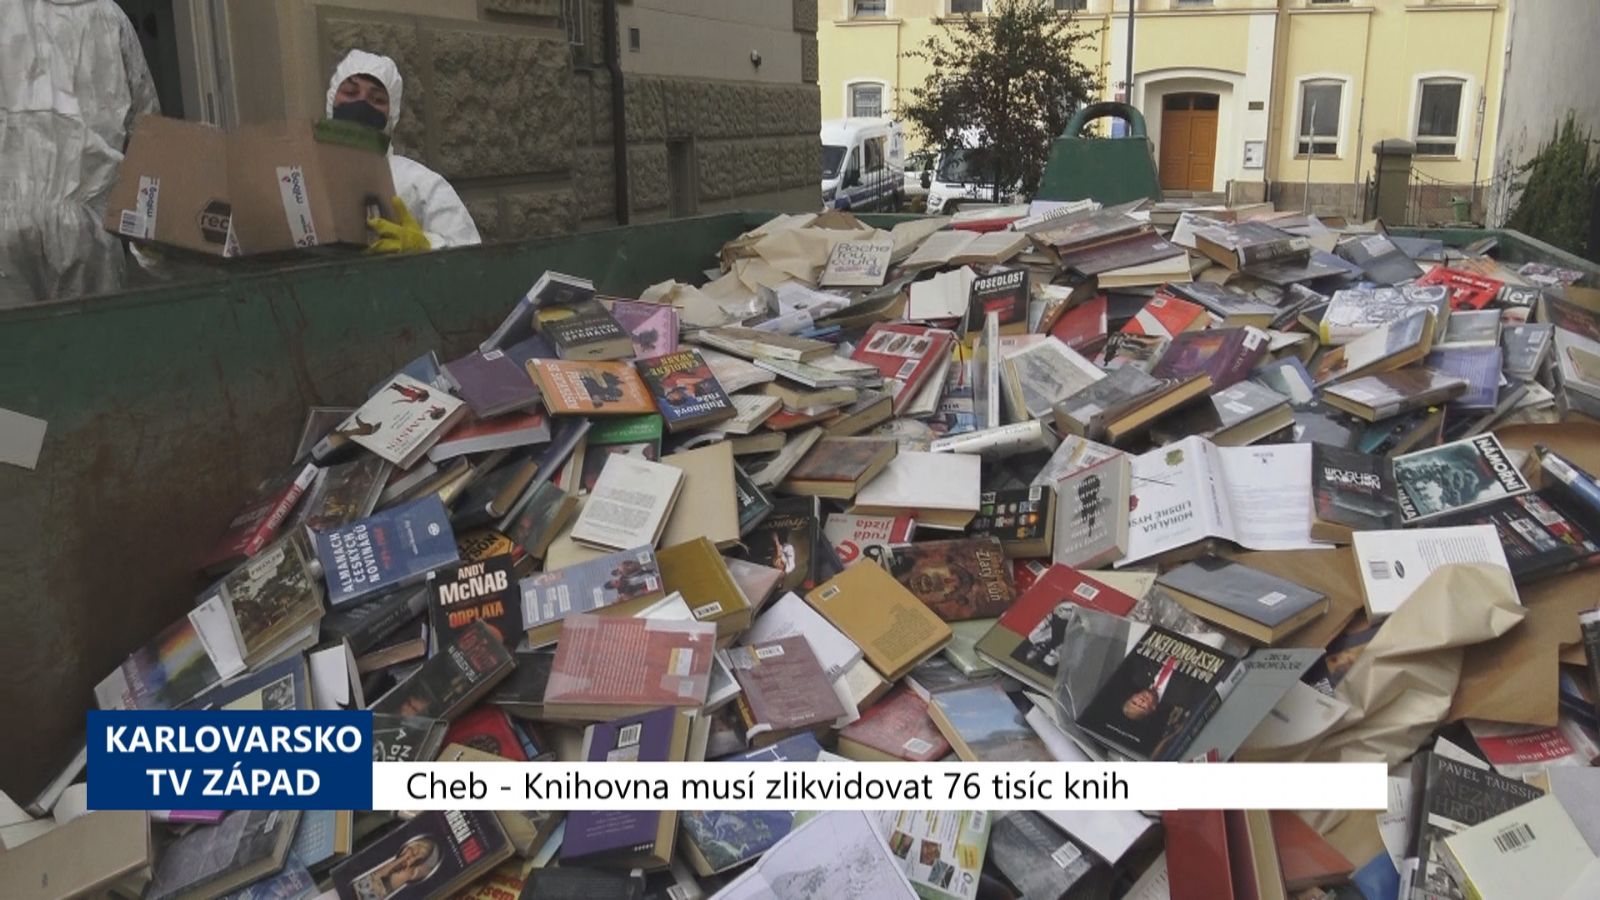 Cheb: Knihovna musí zlikvidovat 76 tisíc knih (TV Západ)